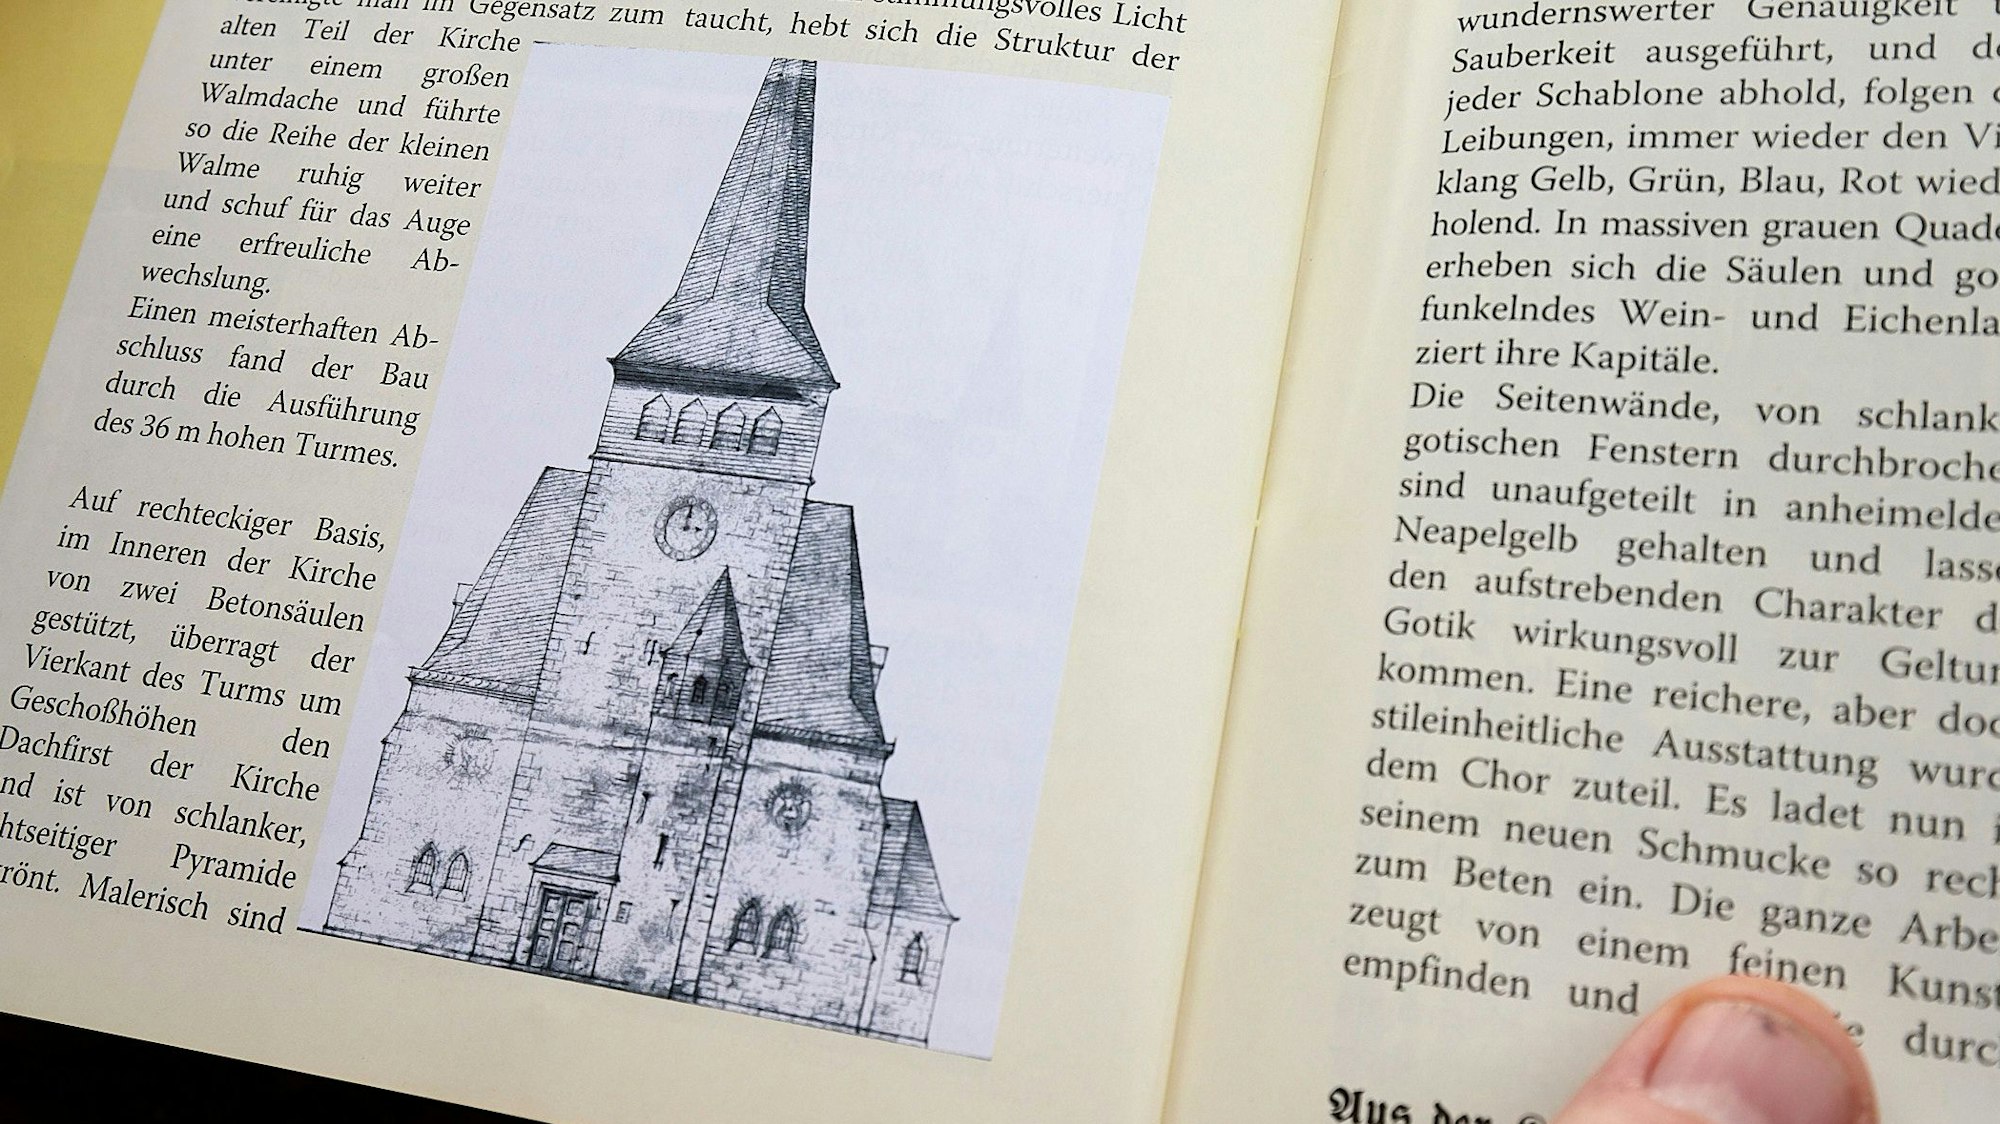 In einem aufgeklappten Buch ist eine alte Zeichnung zu sehen, die einen Kirchturm mit einer Uhr zeigt.